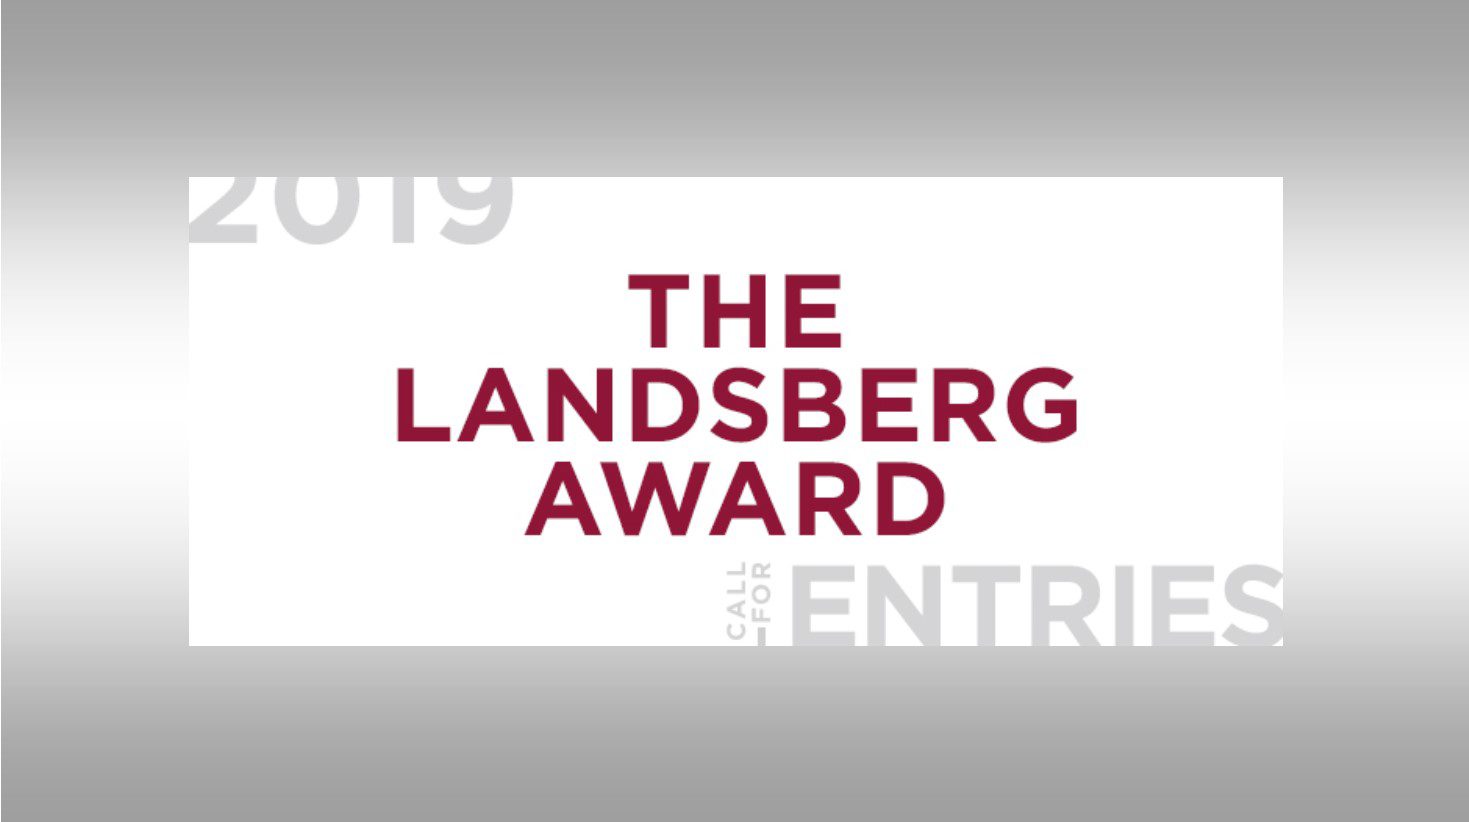 Applications open for the Landsberg Award